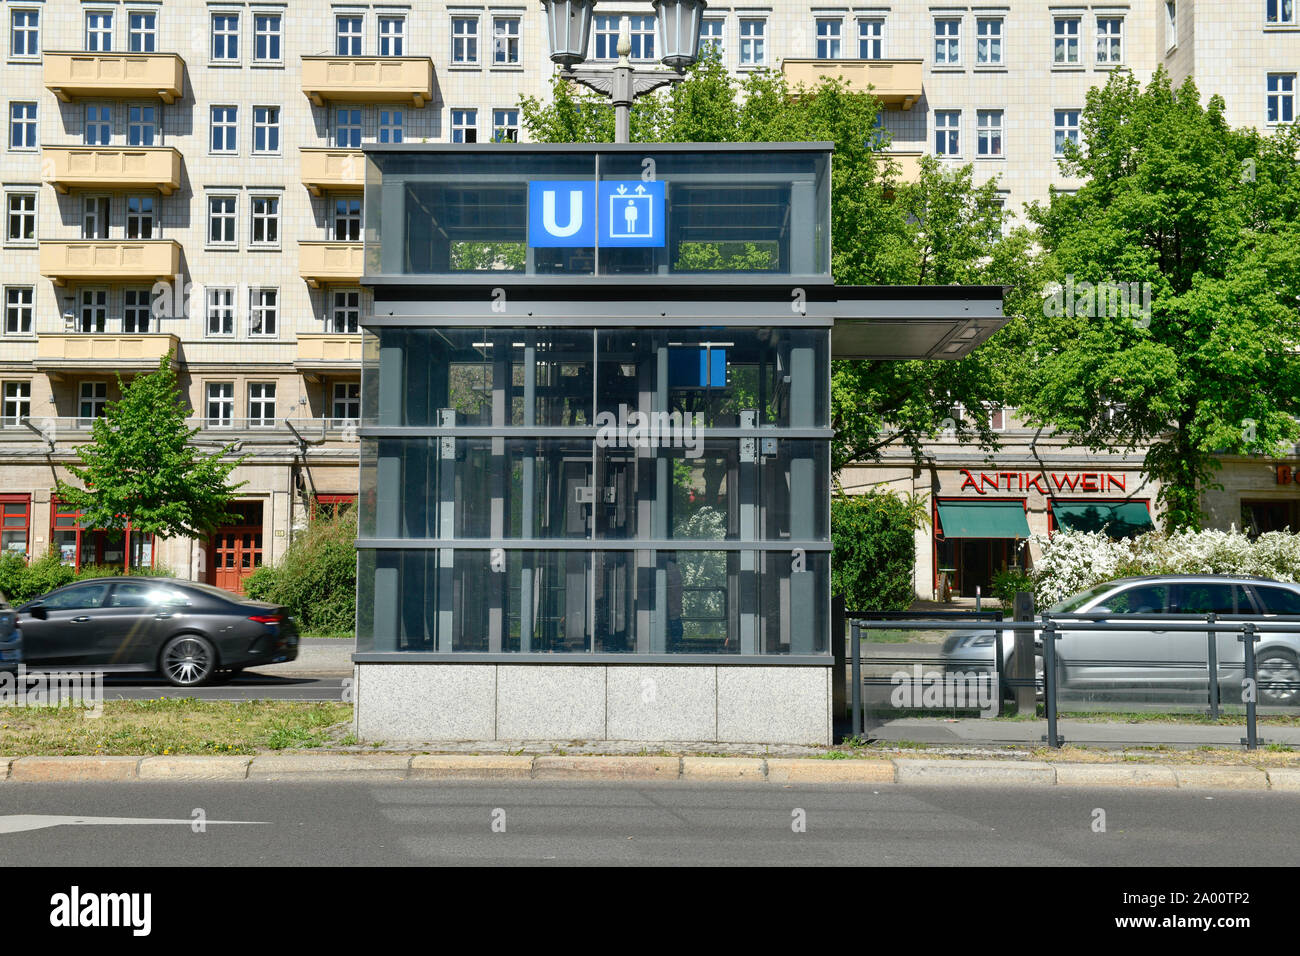 U-Bahn-Aufzug, la Karl-Marx-Allee, Friedrichshain, Berlin, Deutschland Banque D'Images